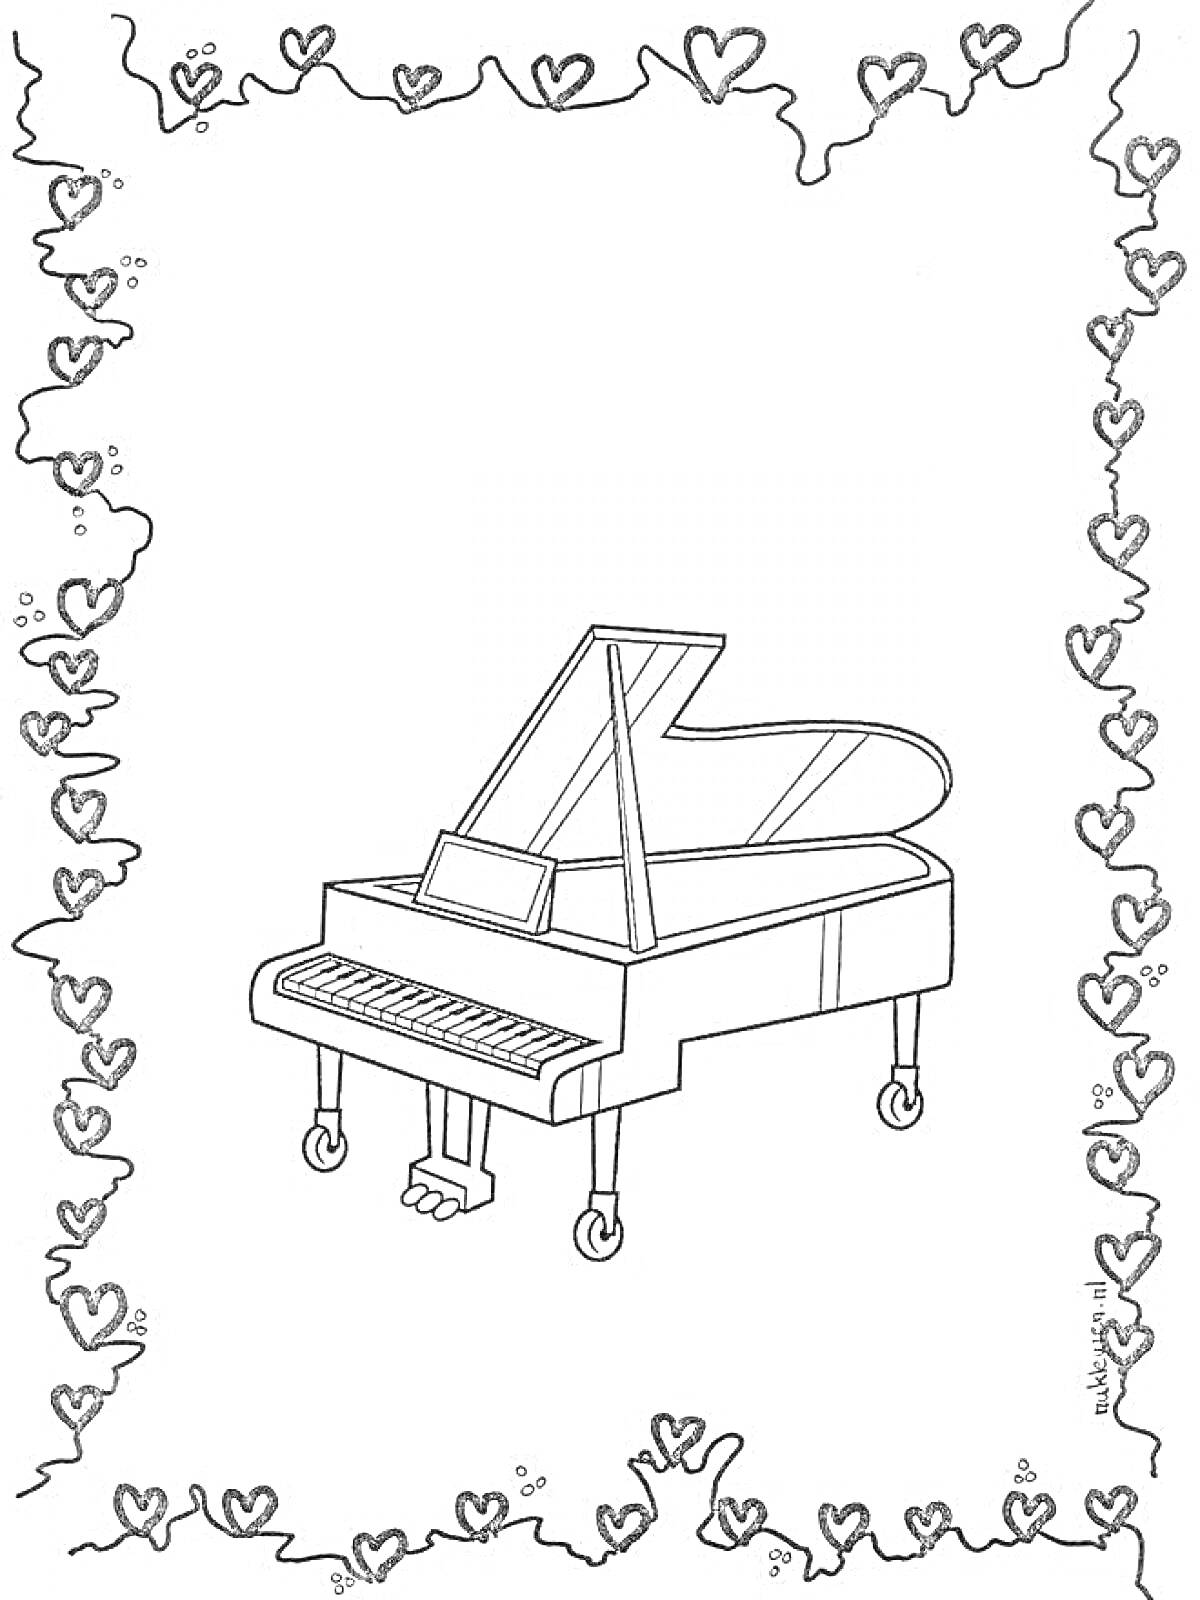 Раскраска концертный рояль в рамке из сердечек